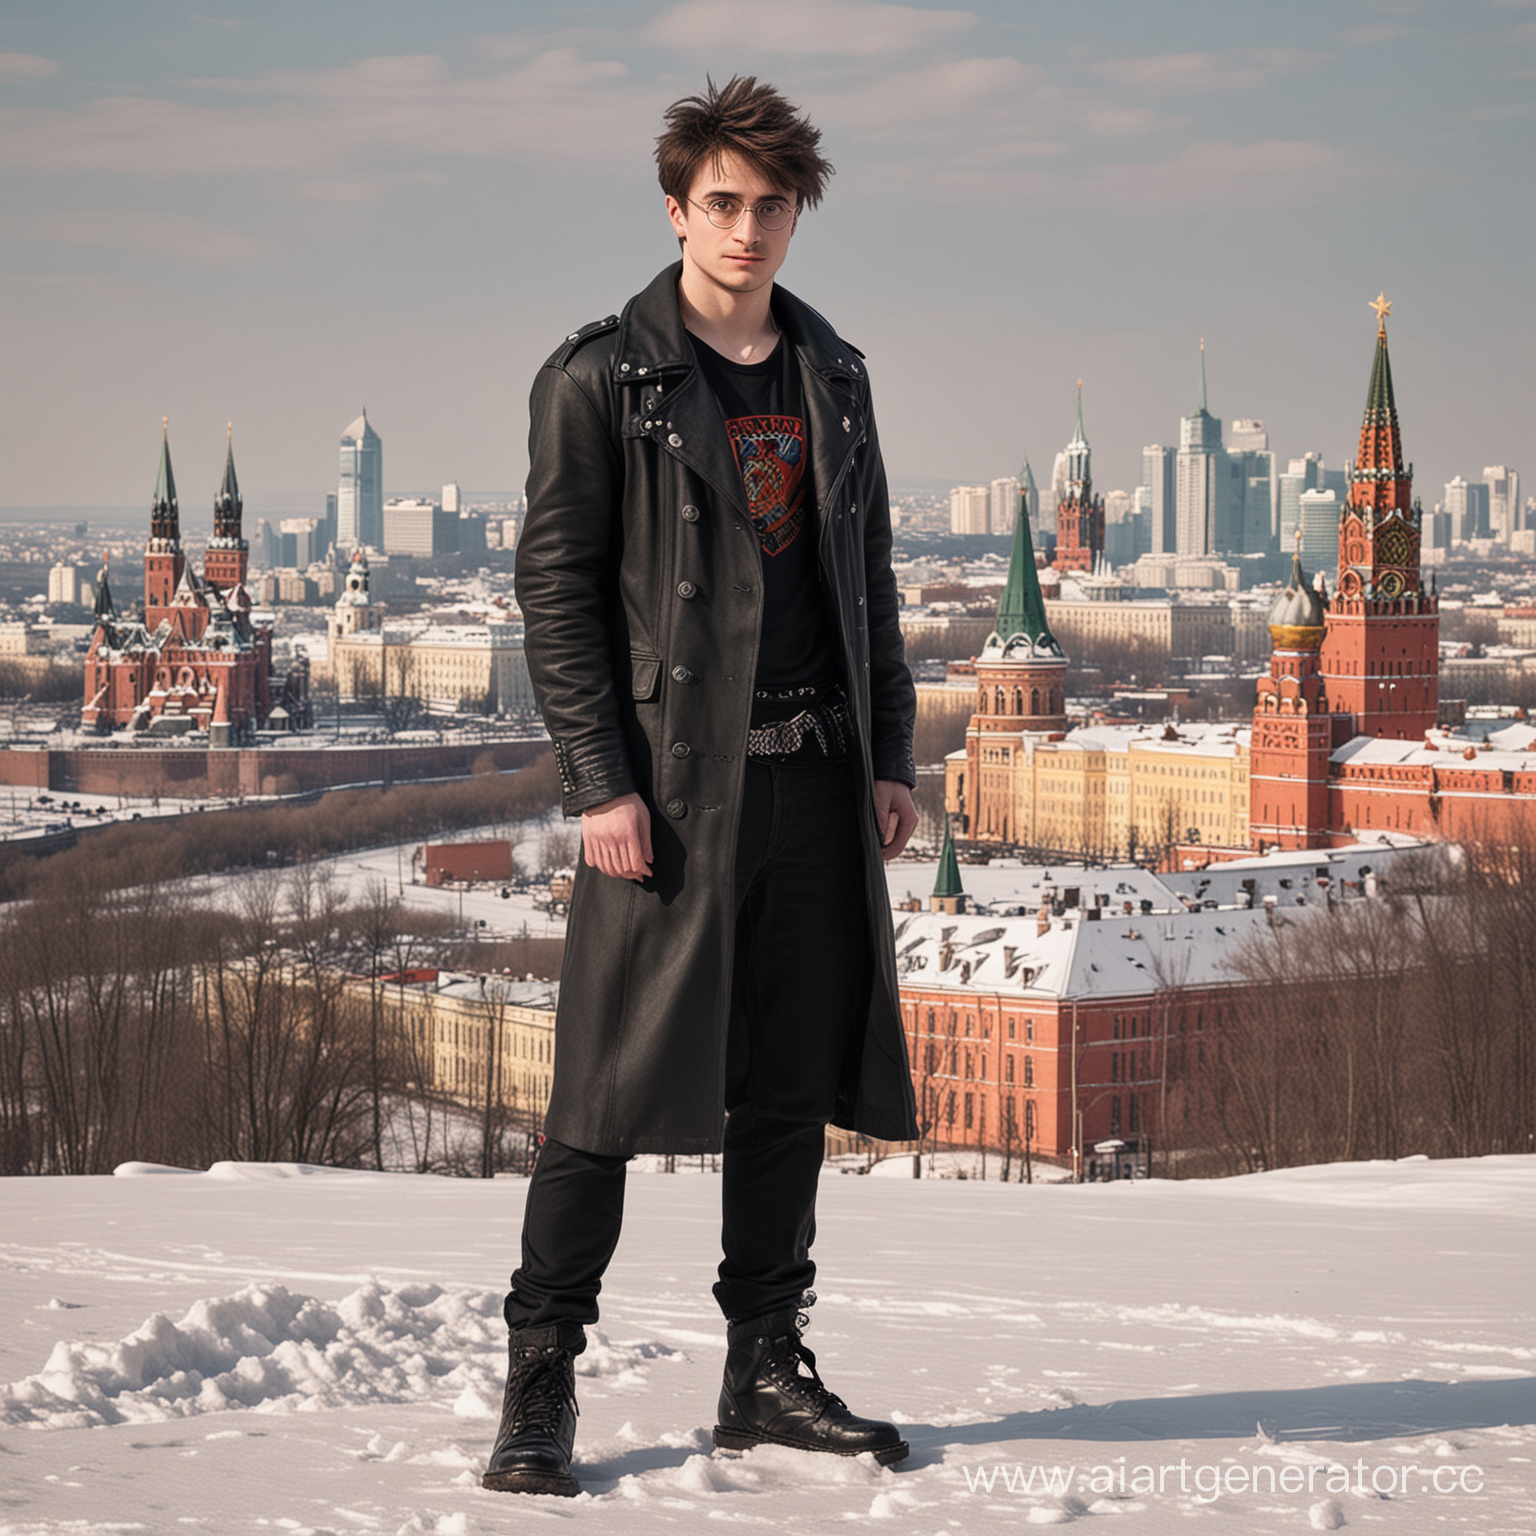 Нарисуй мне уникального персонажа, похожего на Гарри Поттера, но живущего в России, чтобы на фоне была Москва, а сам он был одет в одежду панков